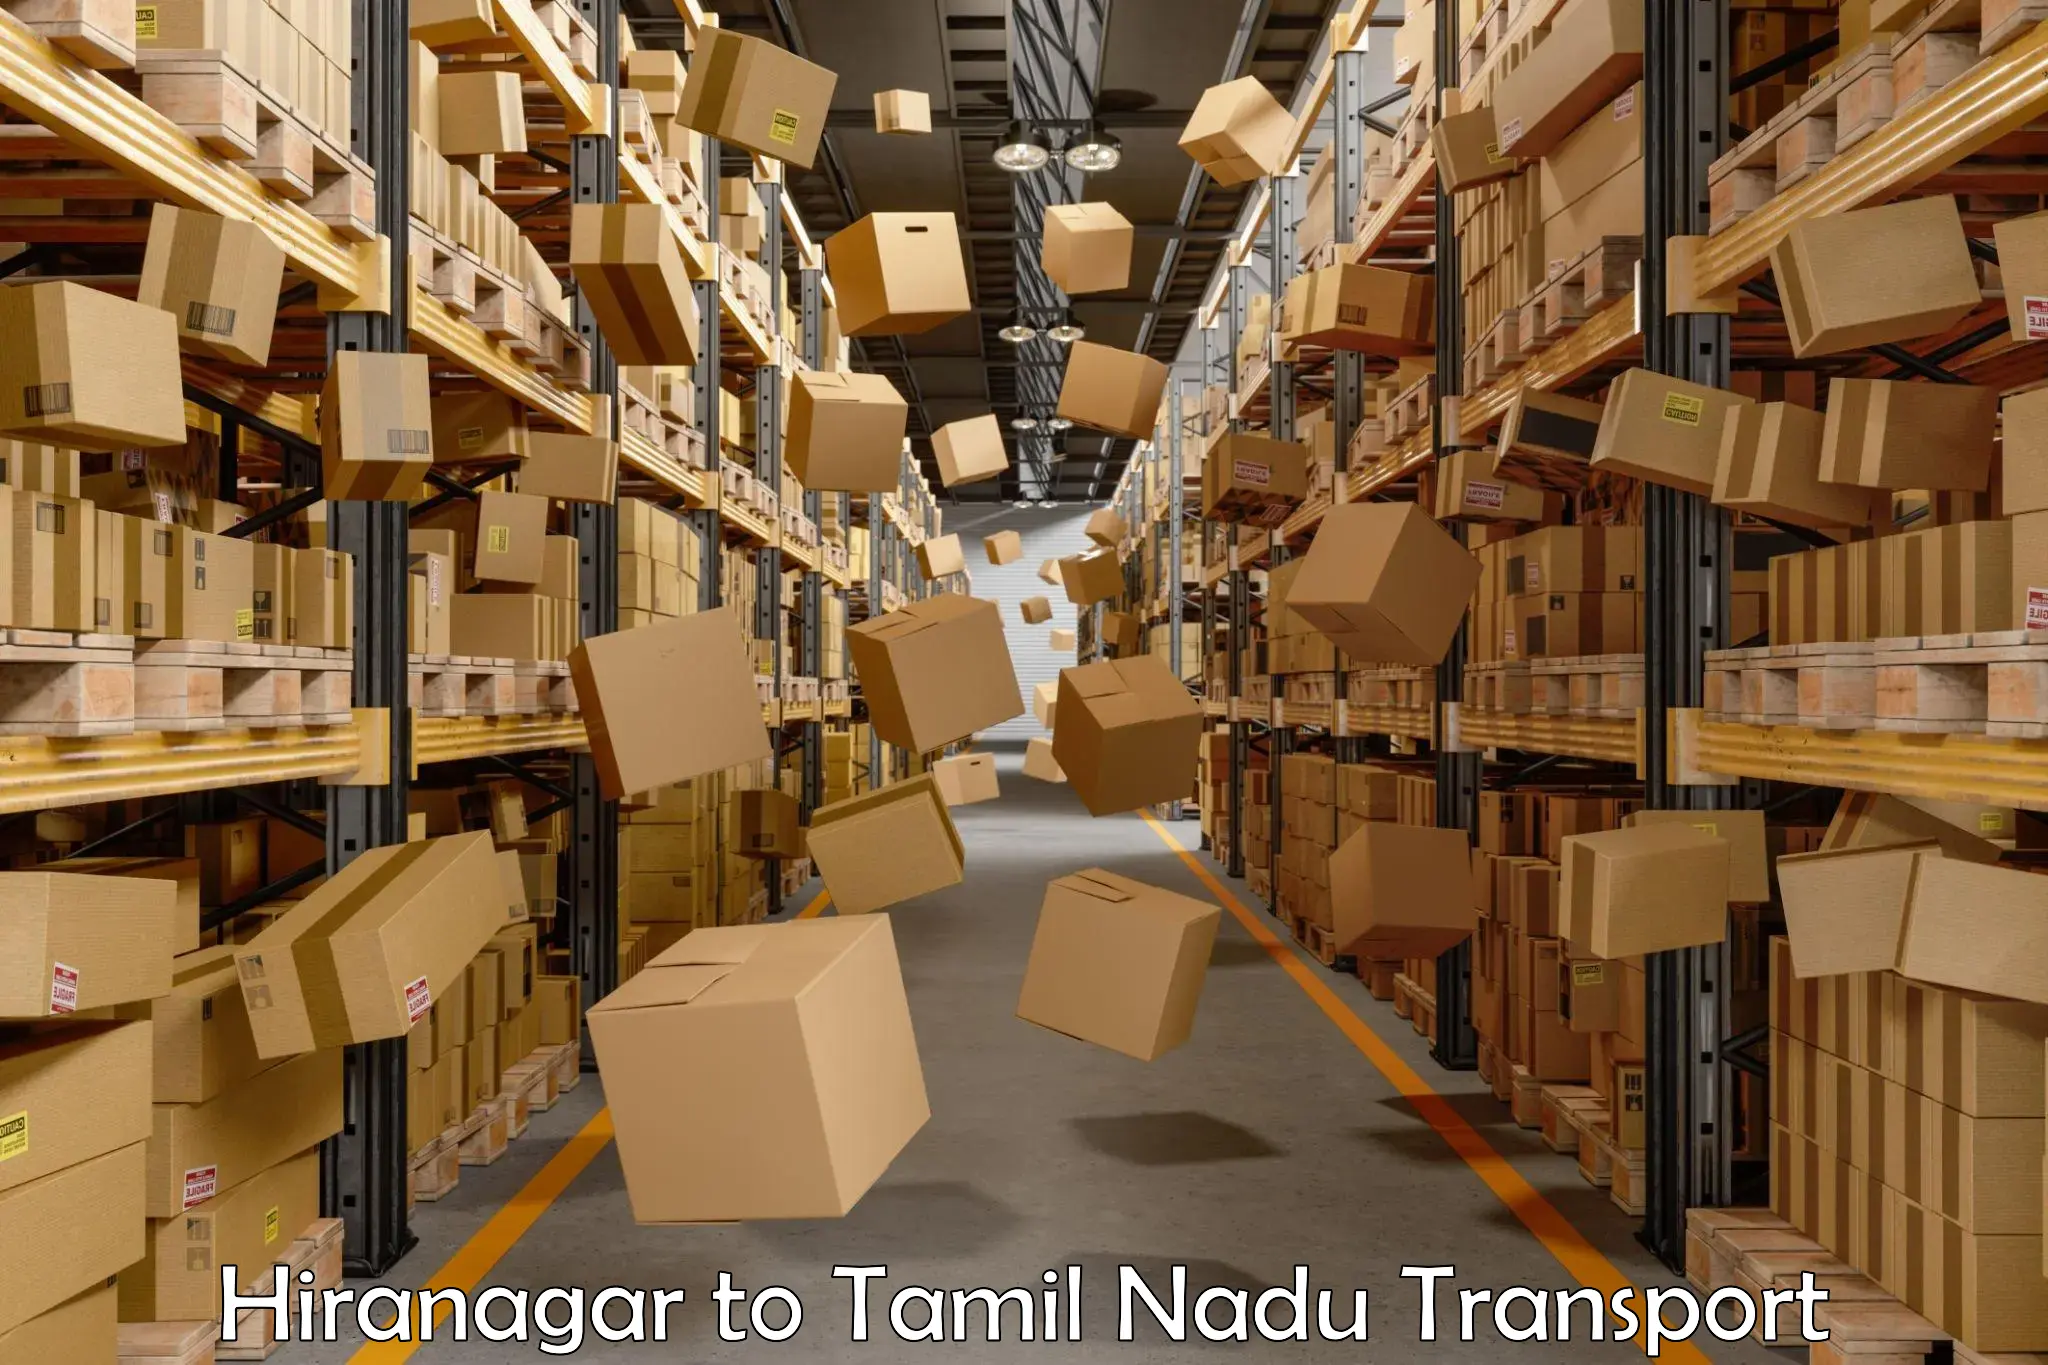 Online transport service Hiranagar to Tamil Nadu